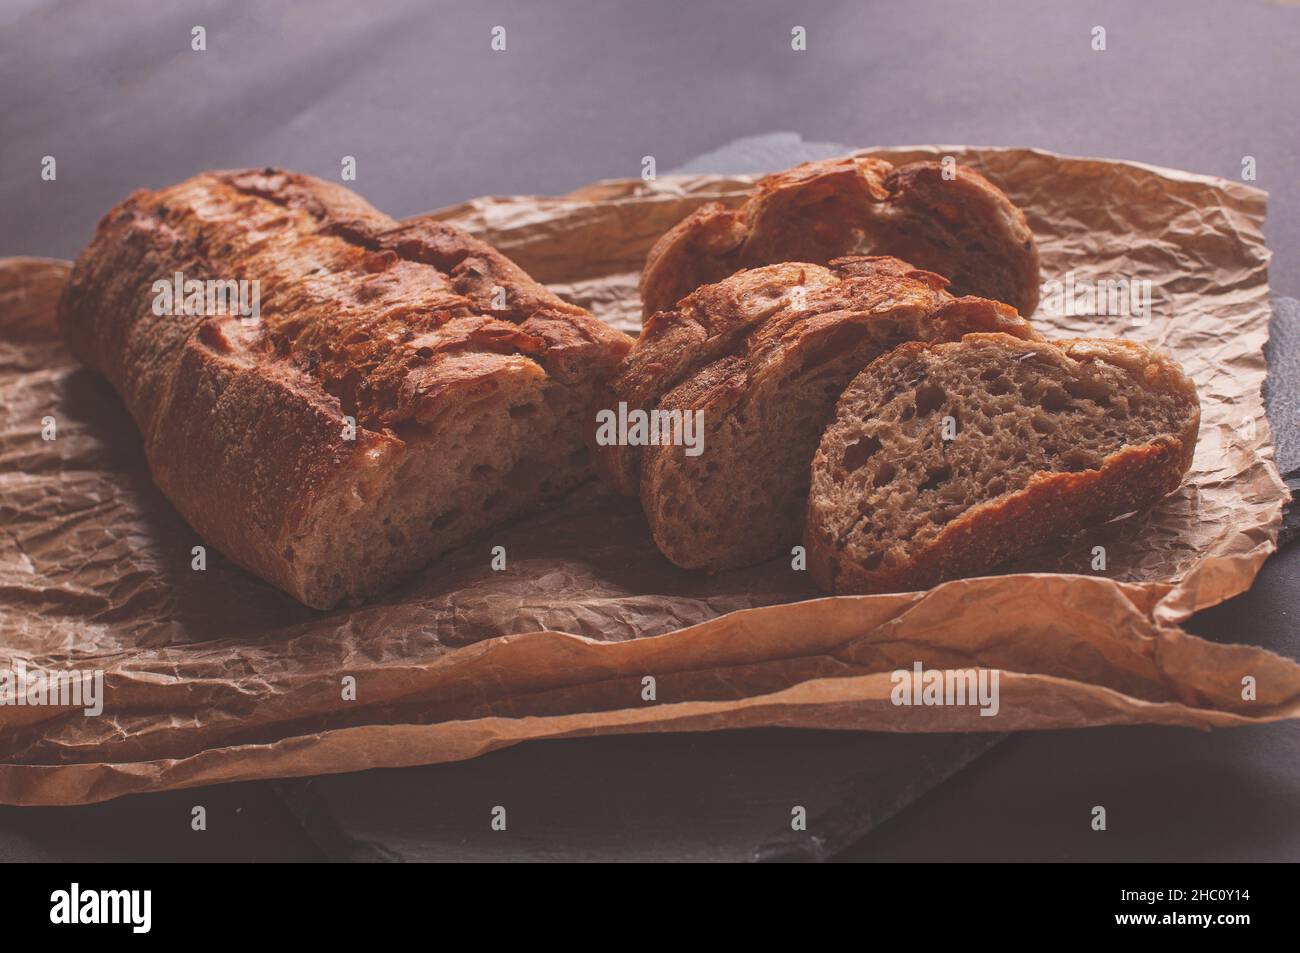 baguette di farina di grano saraceno senza lievito su sfondo nero, fette di pane affettato su carta pergamena. Foto Stock